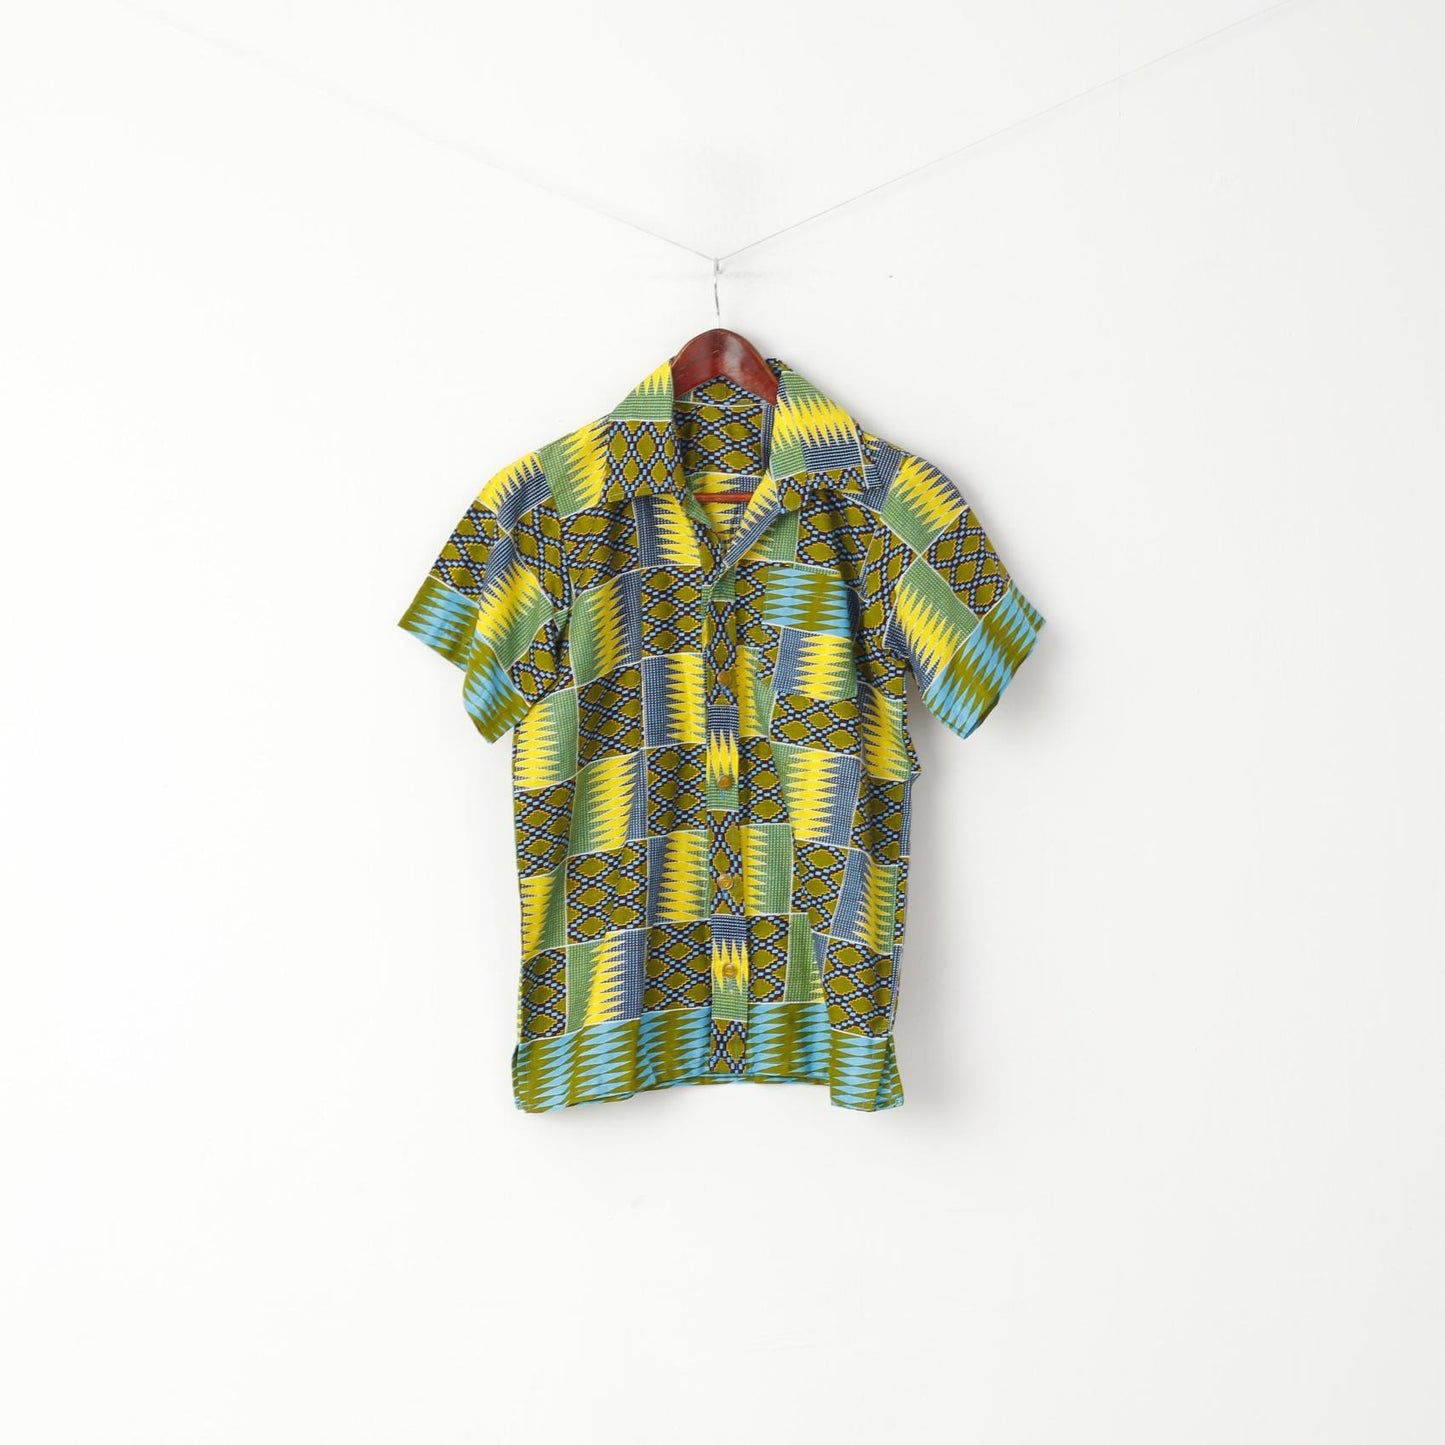 Camicia casual Saitino da 14 anni per ragazzi, top estivo a maniche corte multicolore fatto a mano